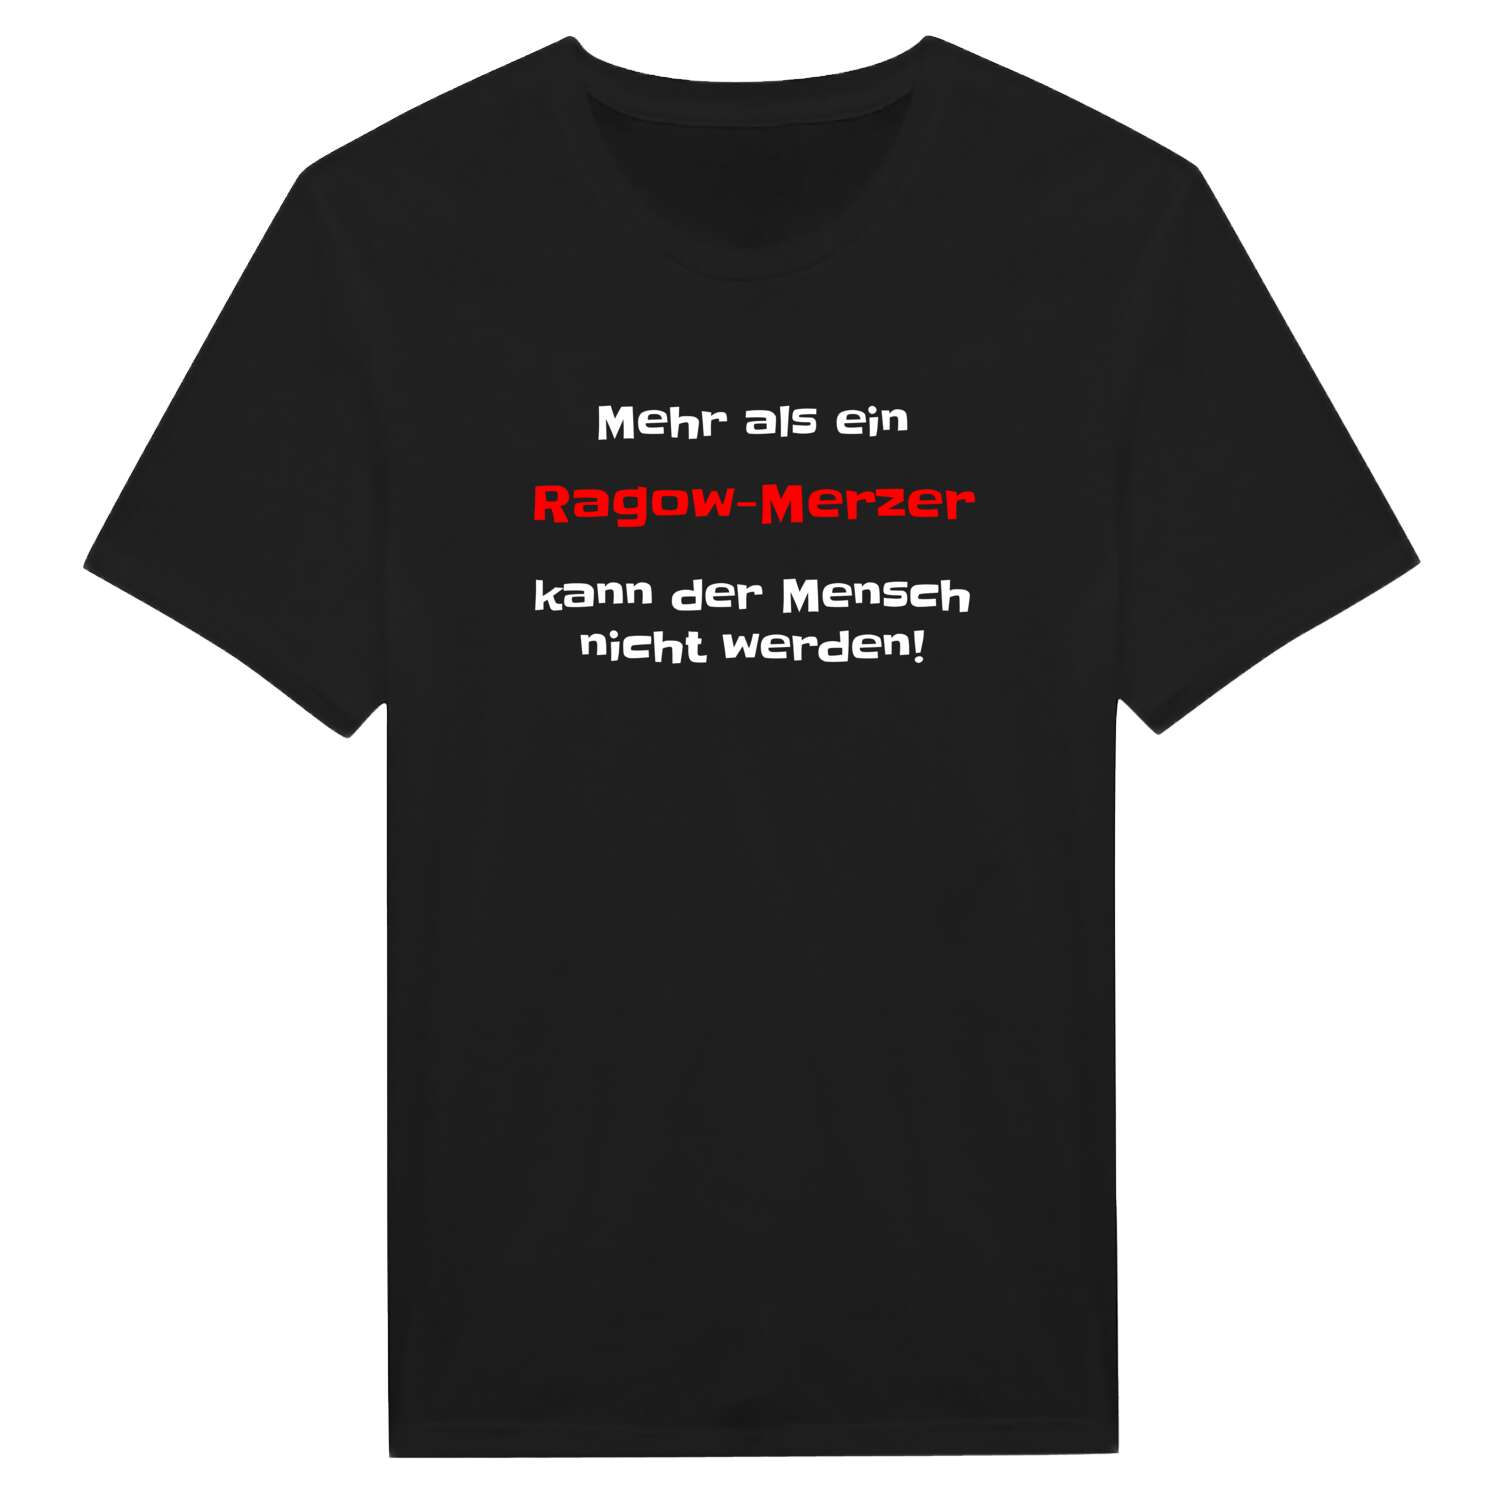 Ragow-Merz T-Shirt »Mehr als ein«